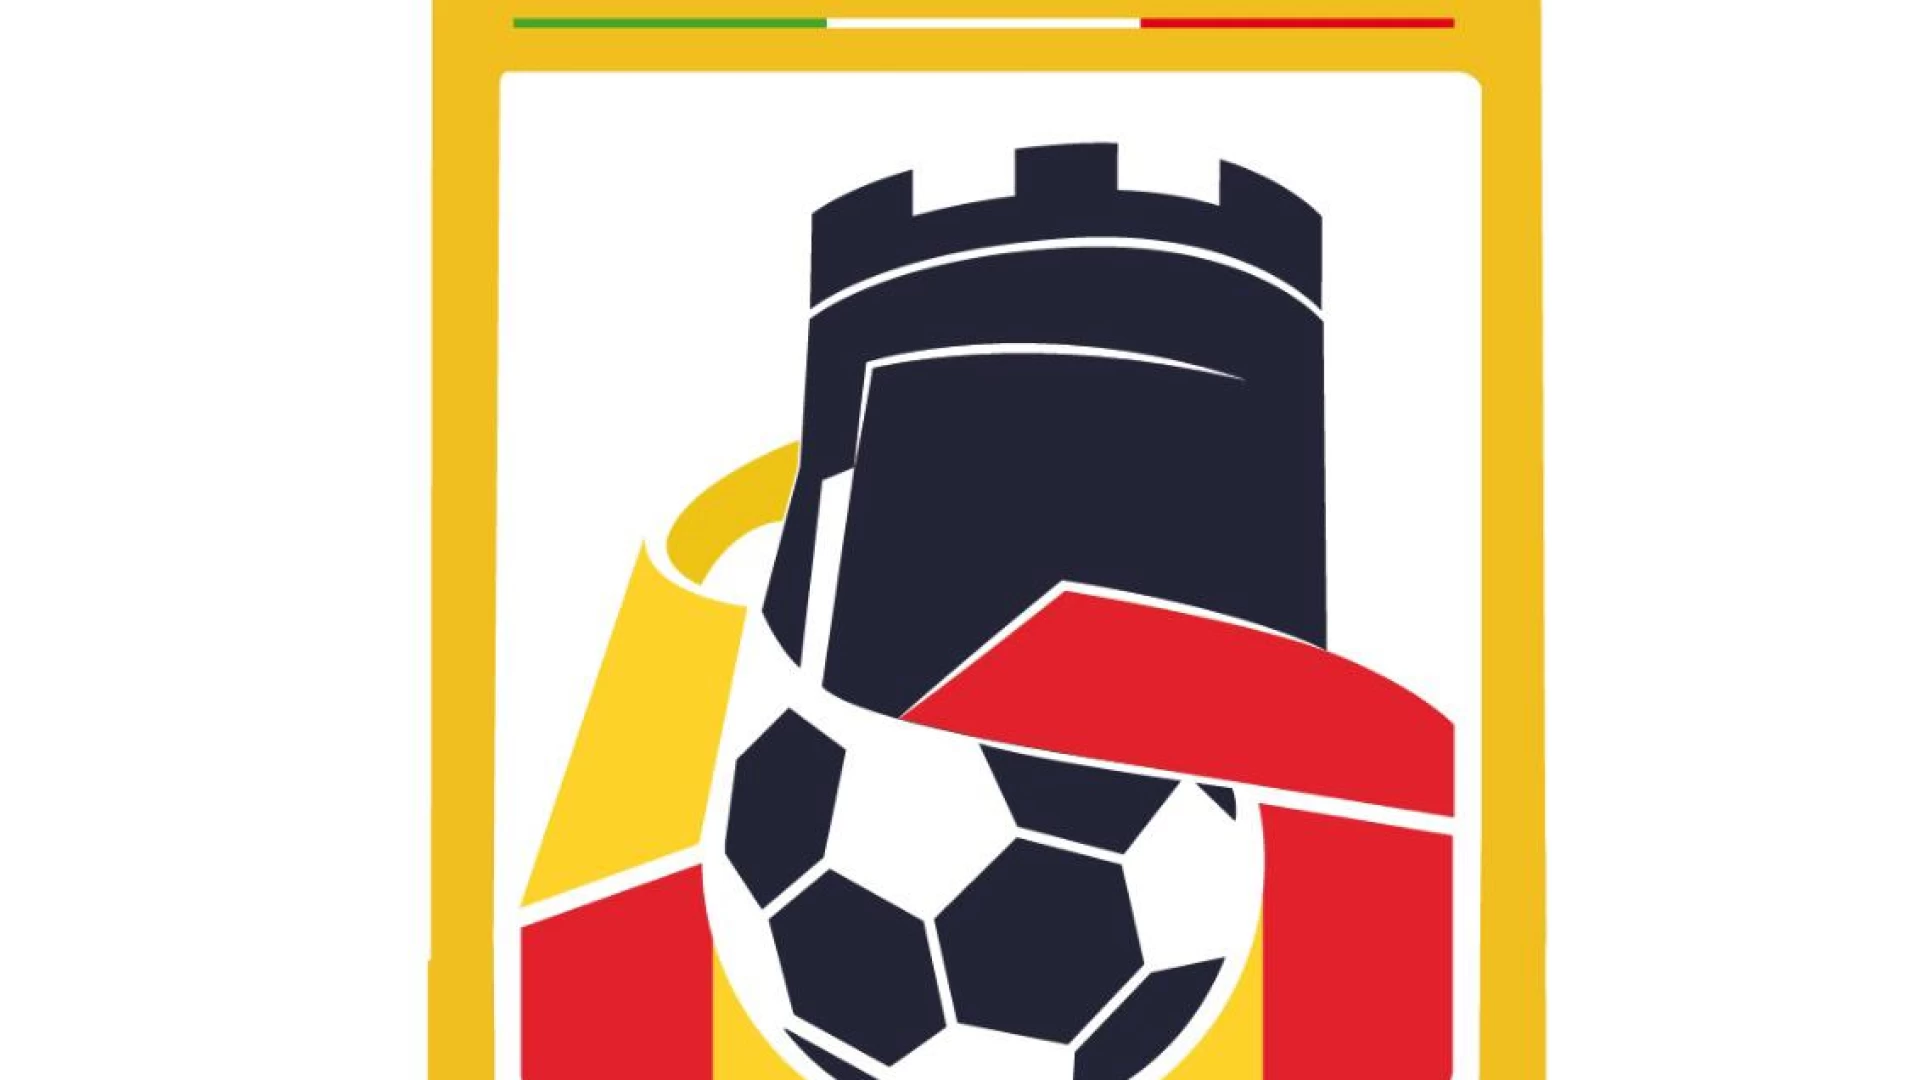 L’Asd Calcio Castel Di Sangro ha scelto ufficialmente il logo. Terminati i sondaggi e le consultazioni sui social.